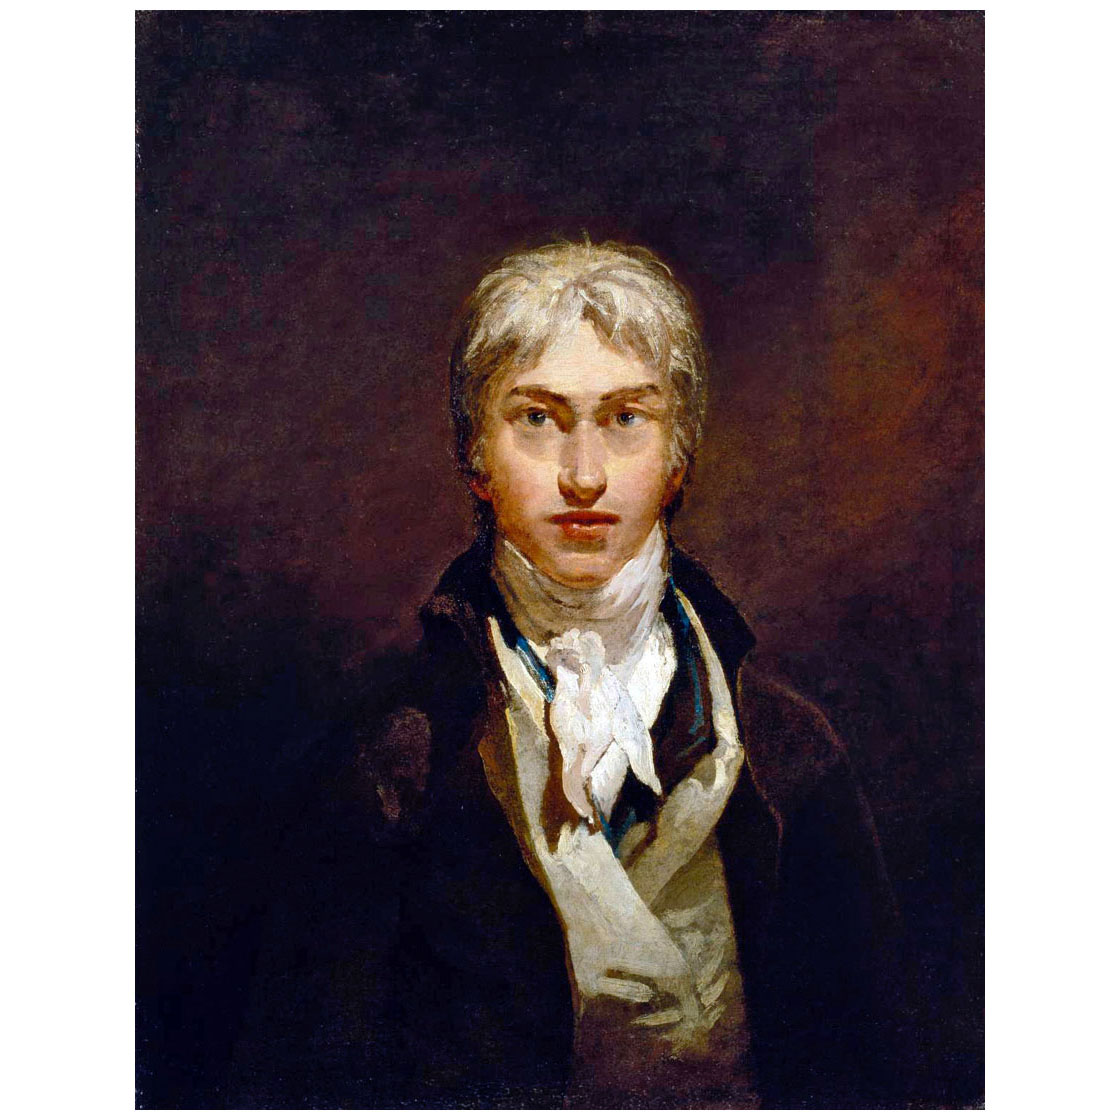 William Turner. Self-Portrait. 1799. Tate Britain